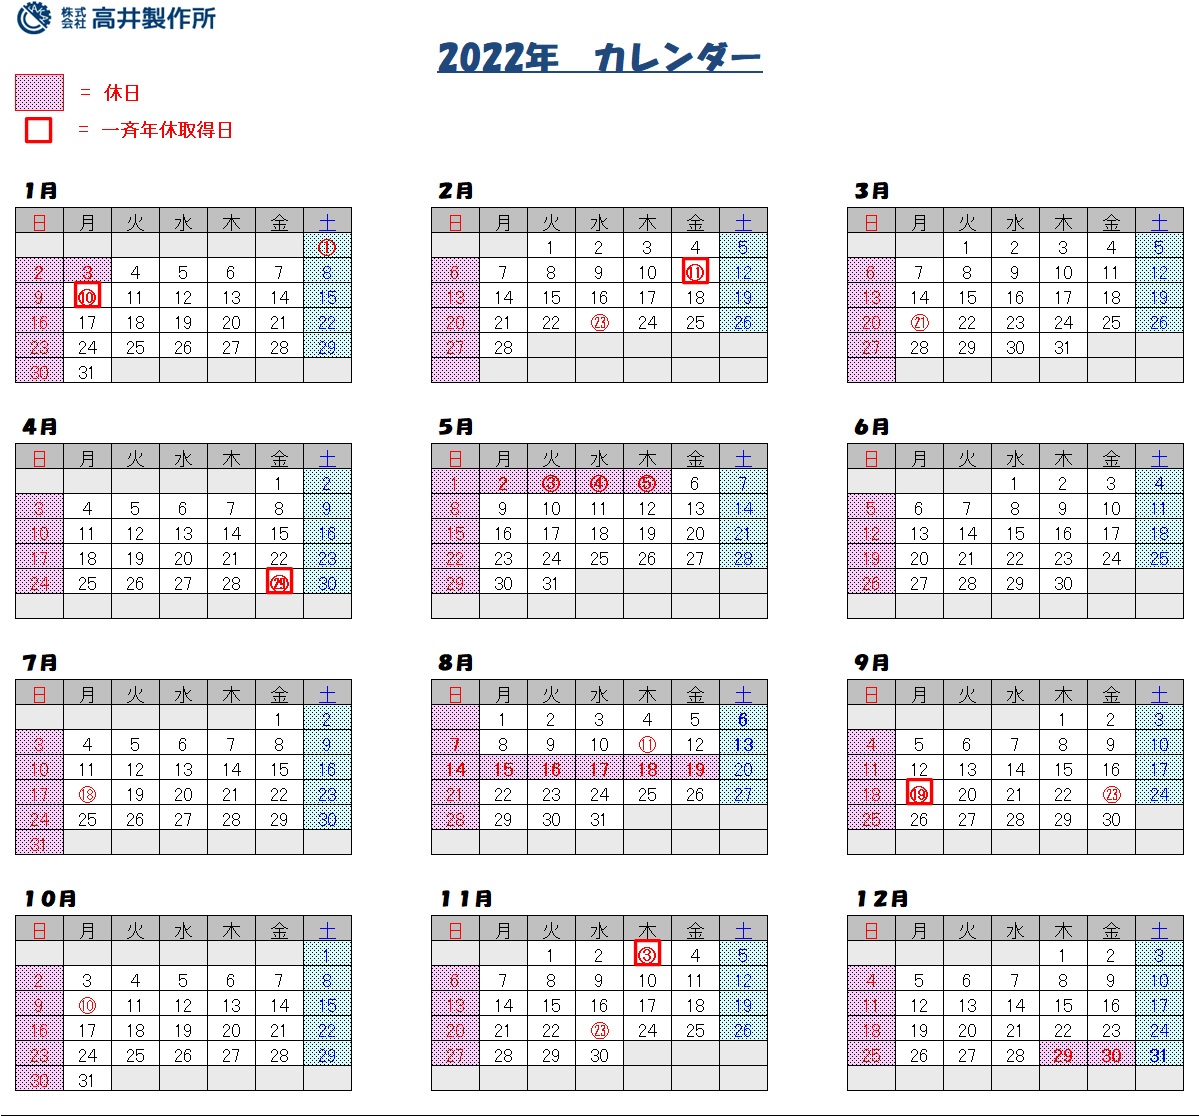 http://www.takai-co.jp/news/2022_Takai-Calendar.jpg